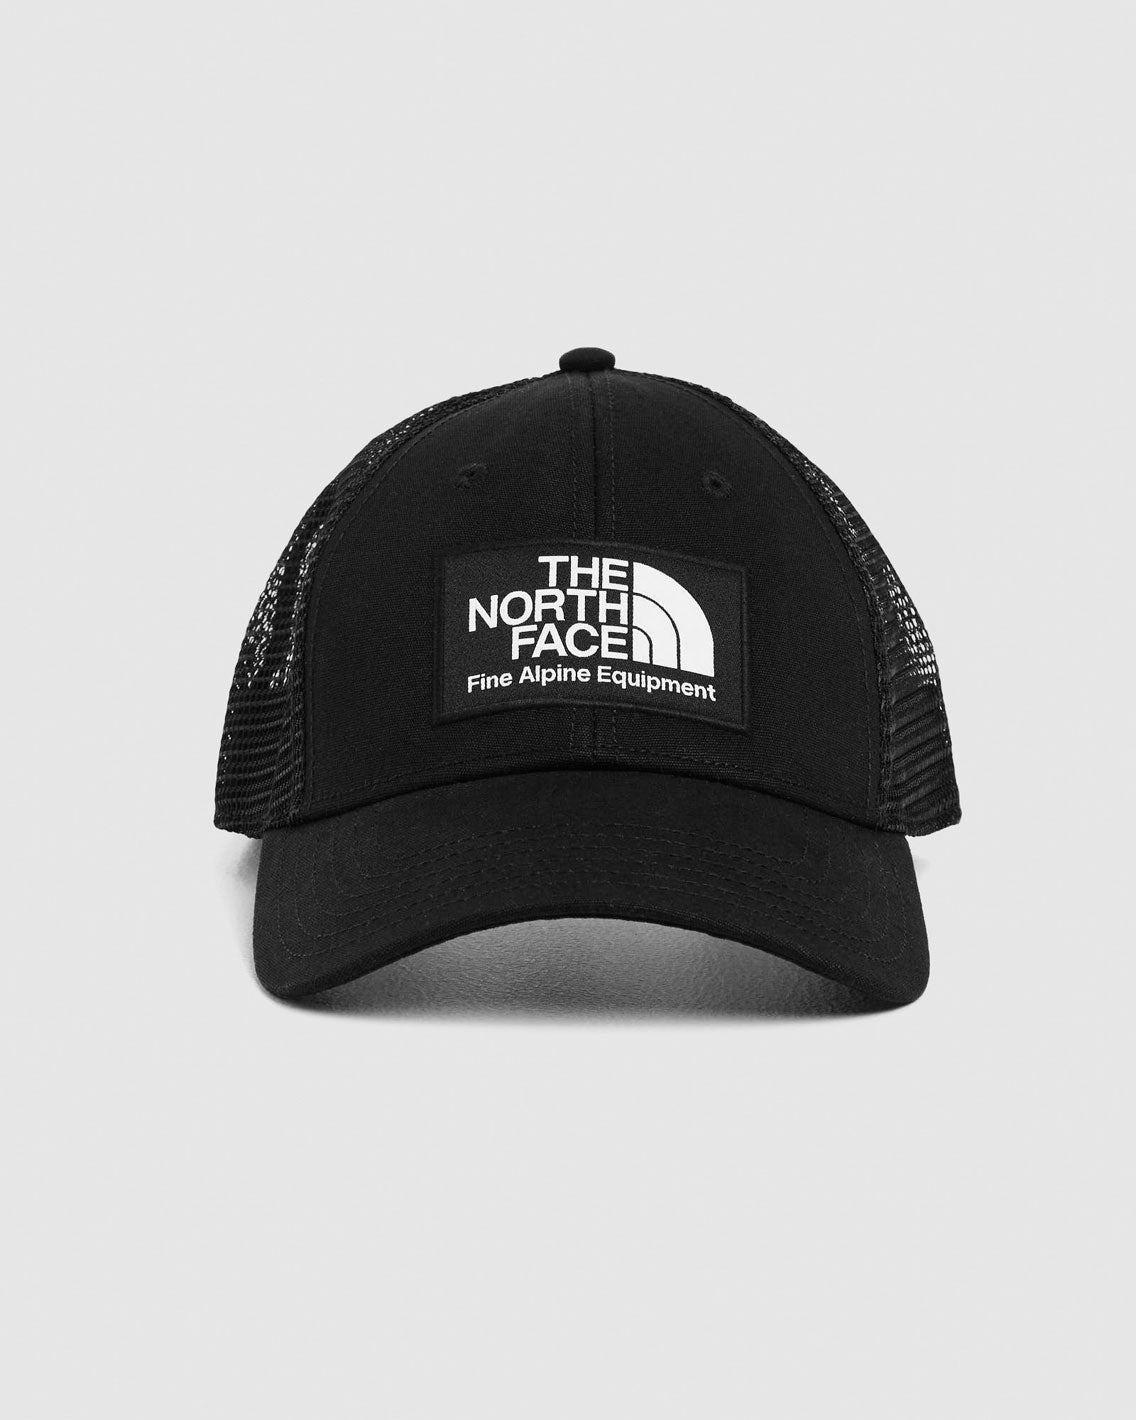 The North Face - Mudder Trucker Hat - TNF Black